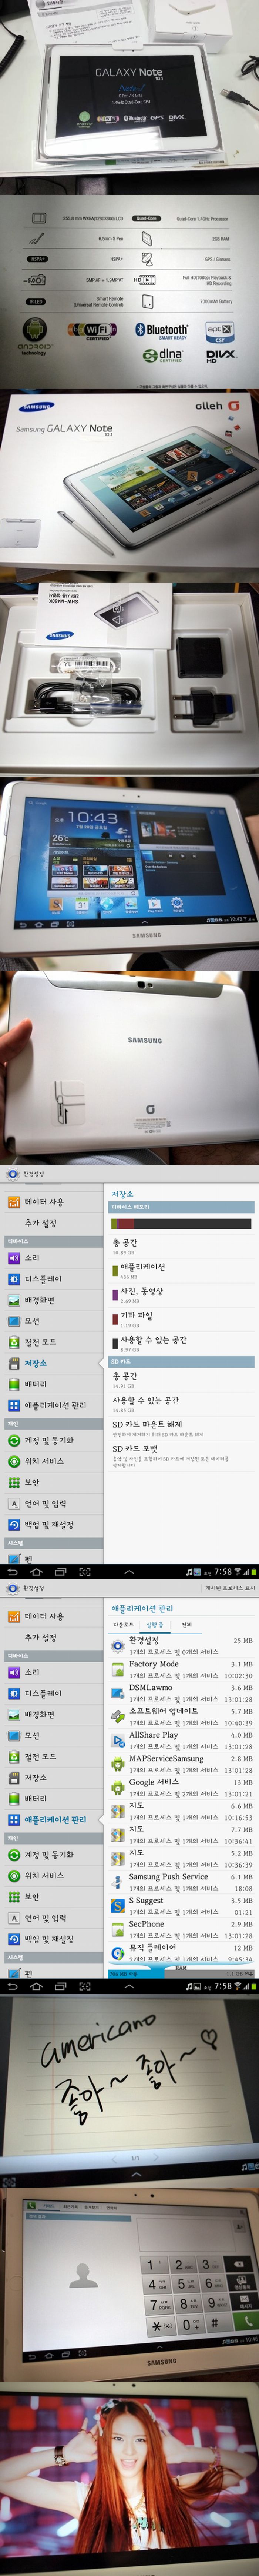 Samsung Galaxy Note 10.1: 4 mag, 1.4 GHz, 2 GB RAM